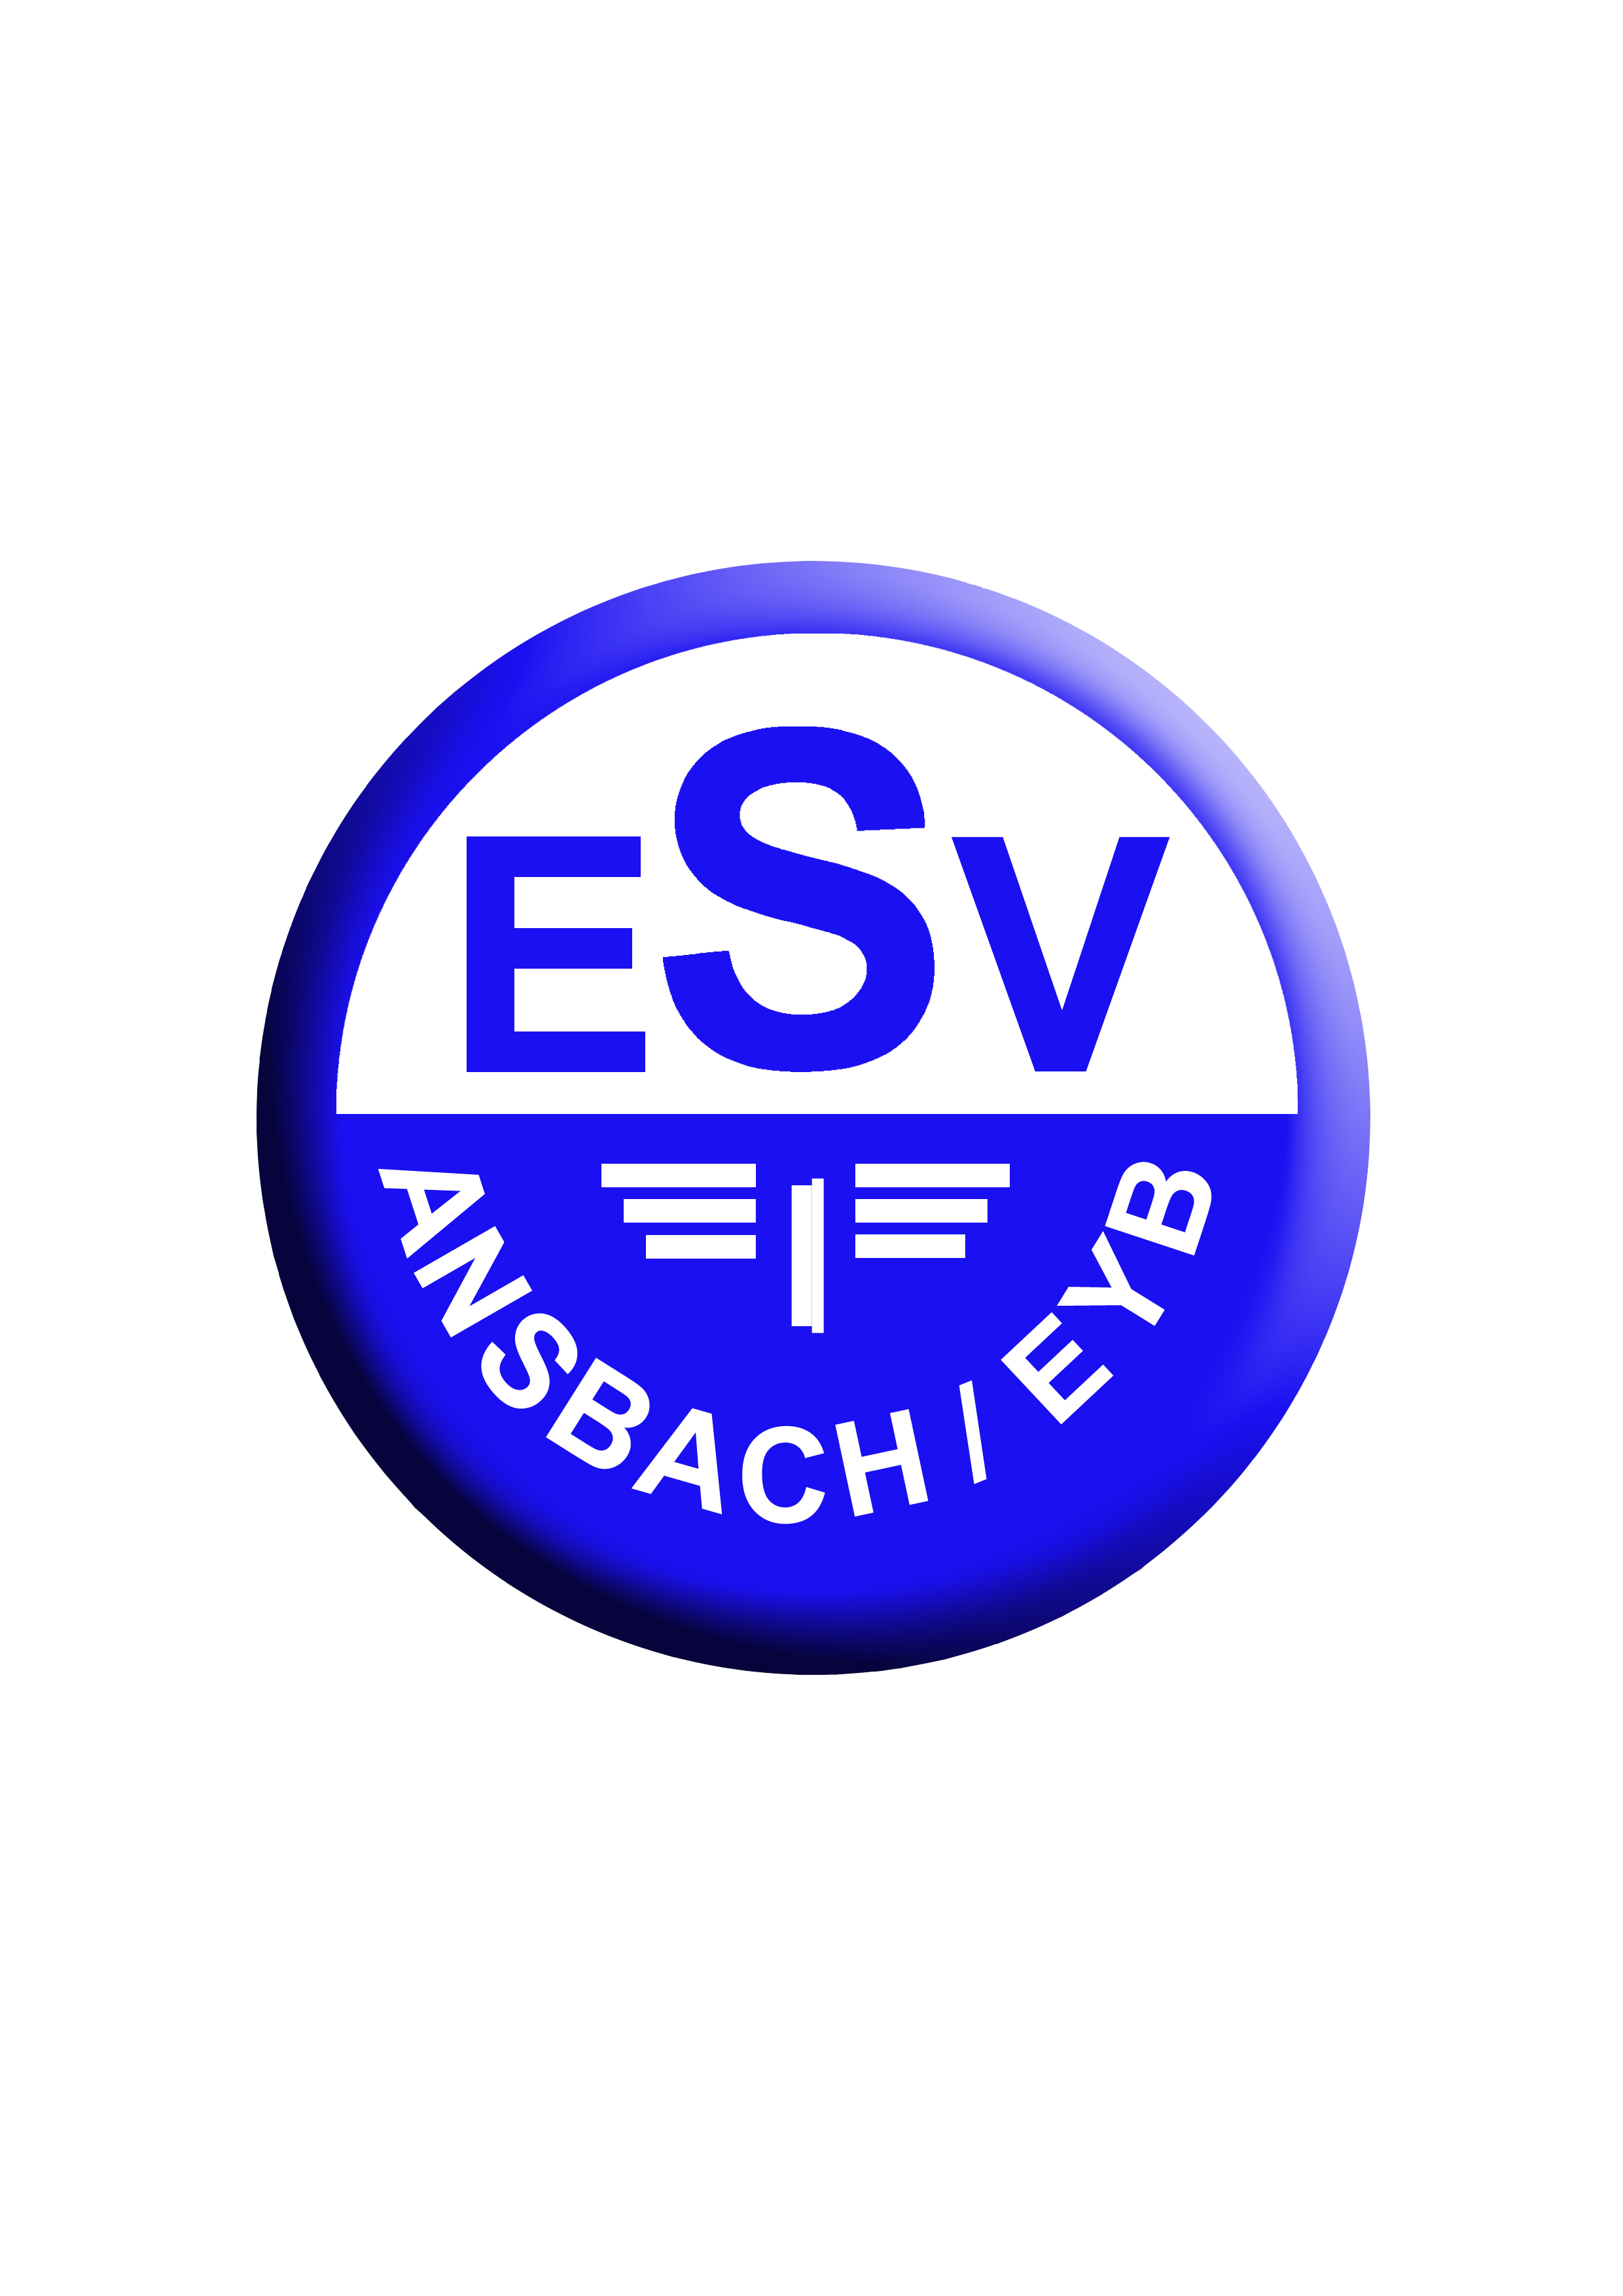 ESV Ansbach Eyb Logo